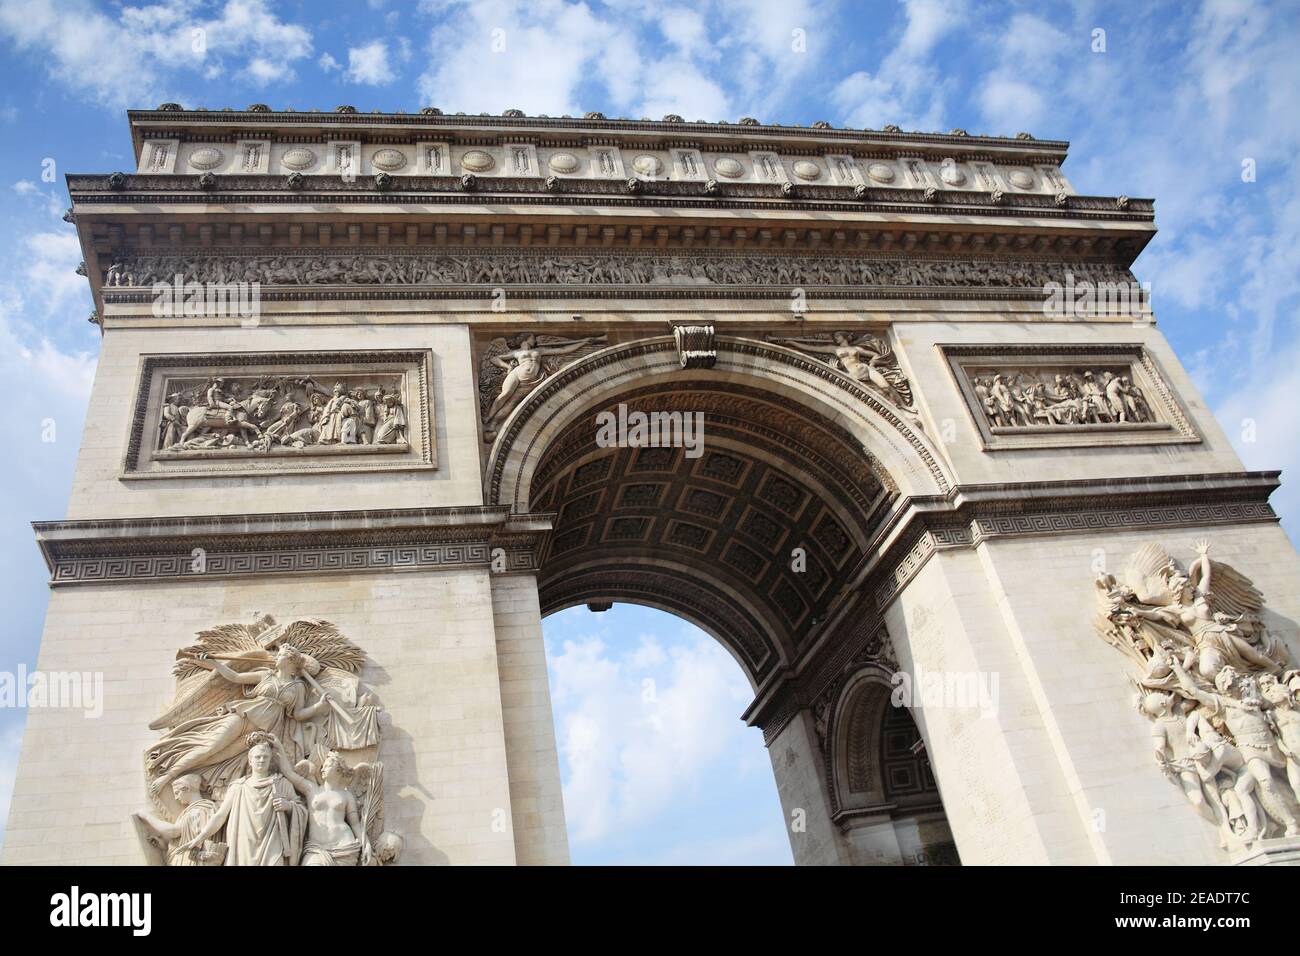 Der Arc de Triomphe in Paris Frankreich ein französisches nationales Wahrzeichen, das ein beliebtes Touristenziel ist, Stock Foto Bild Stockfoto